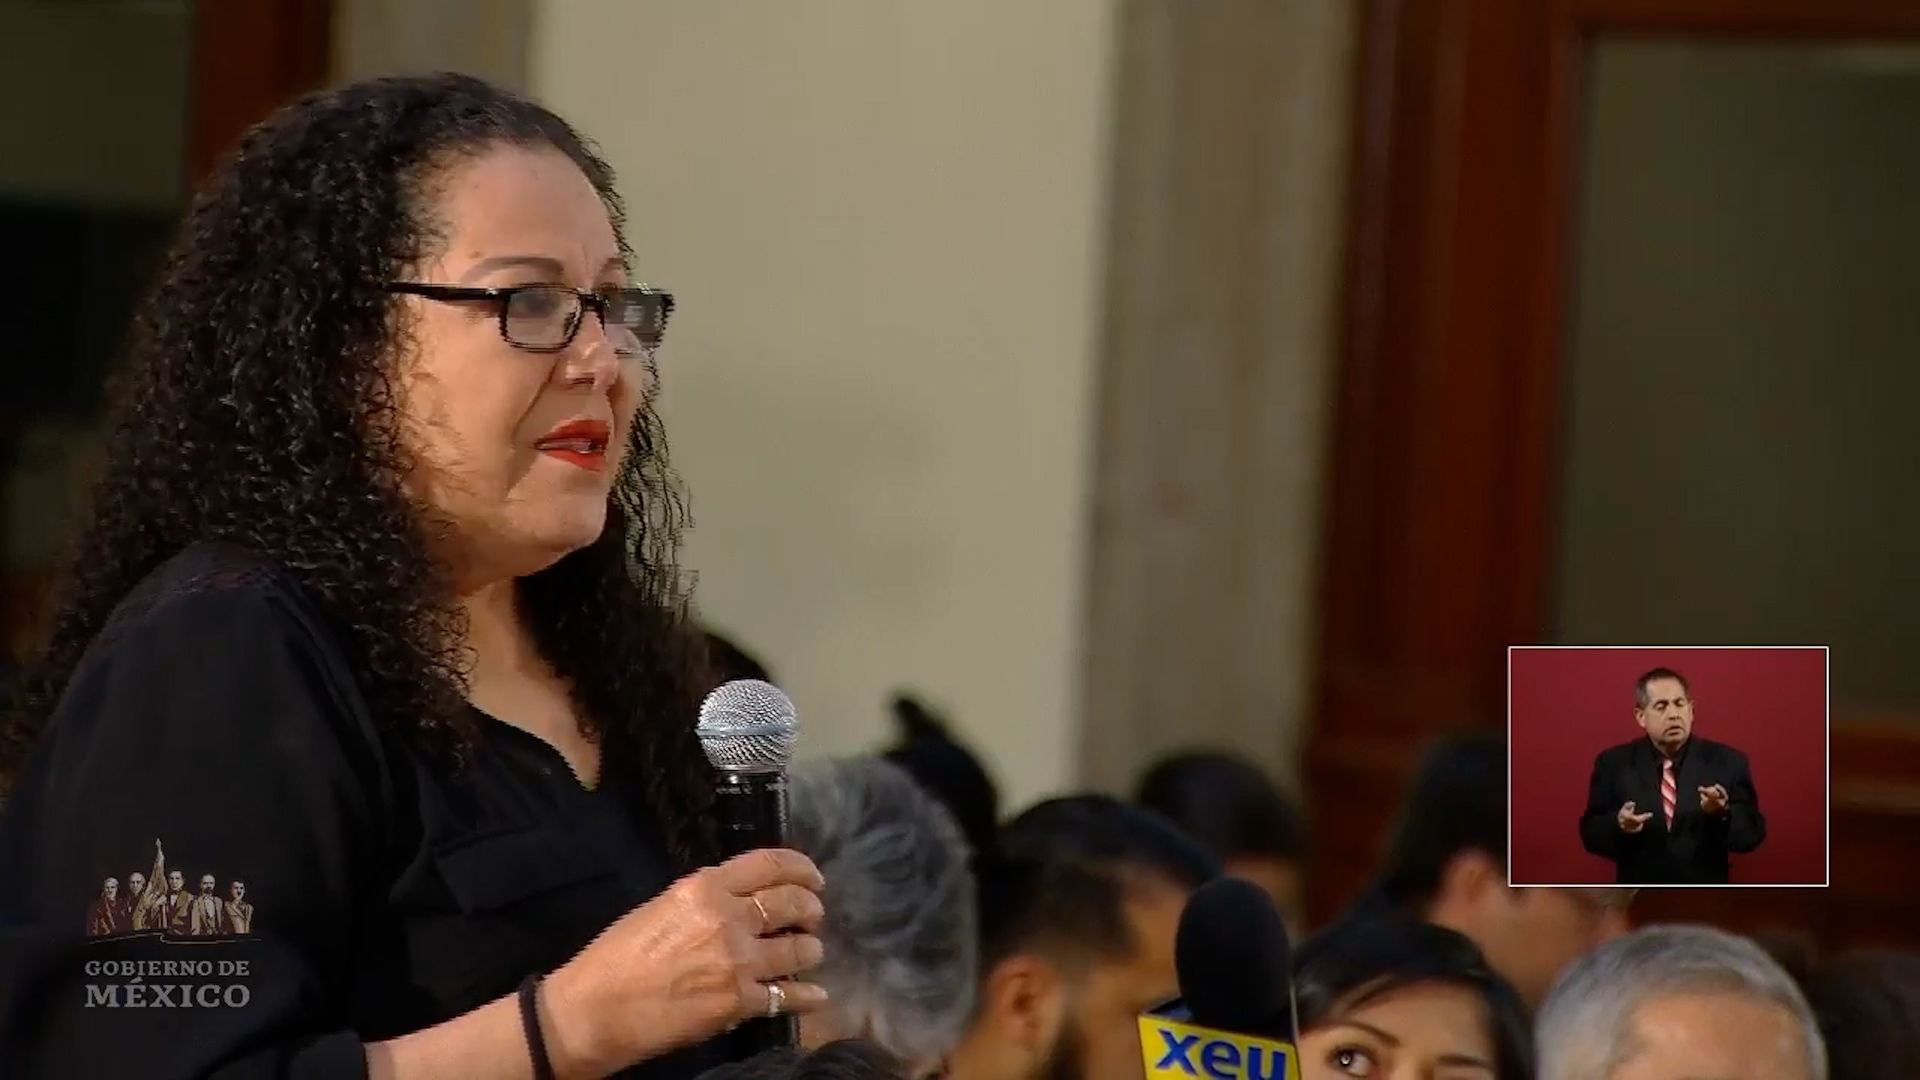 La periodista Lourdes Maldonado acudió a la conferencia matutina de AMLO para solicitar su apoyo en un "tema laboral" (Foto: Captura de pantalla de Conferencia Presidencial)